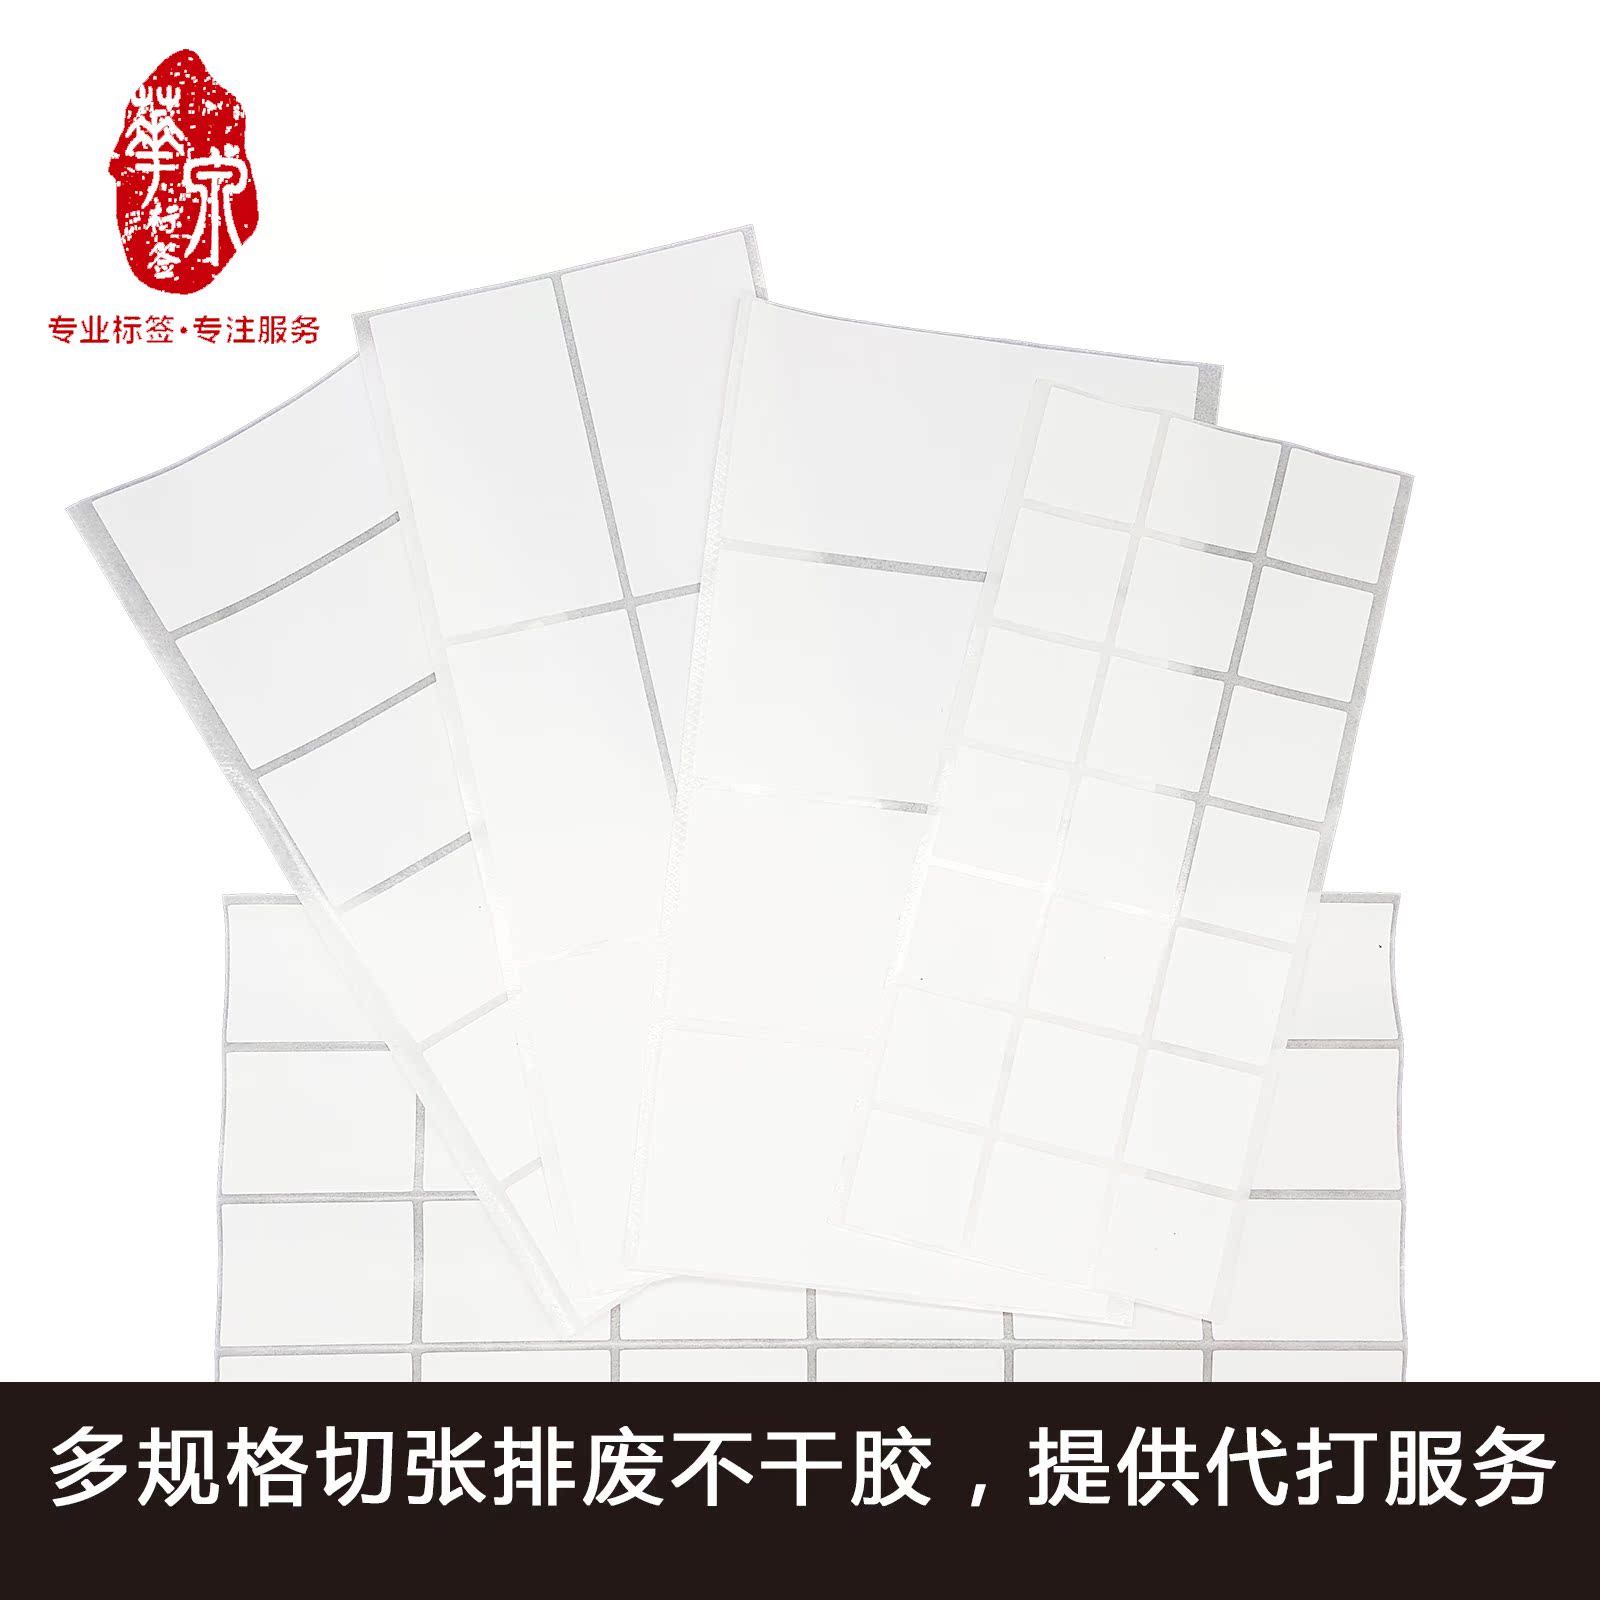 【代打包邮】多规格尺寸切张空白艾利铜版纸不干胶可提供代客打印